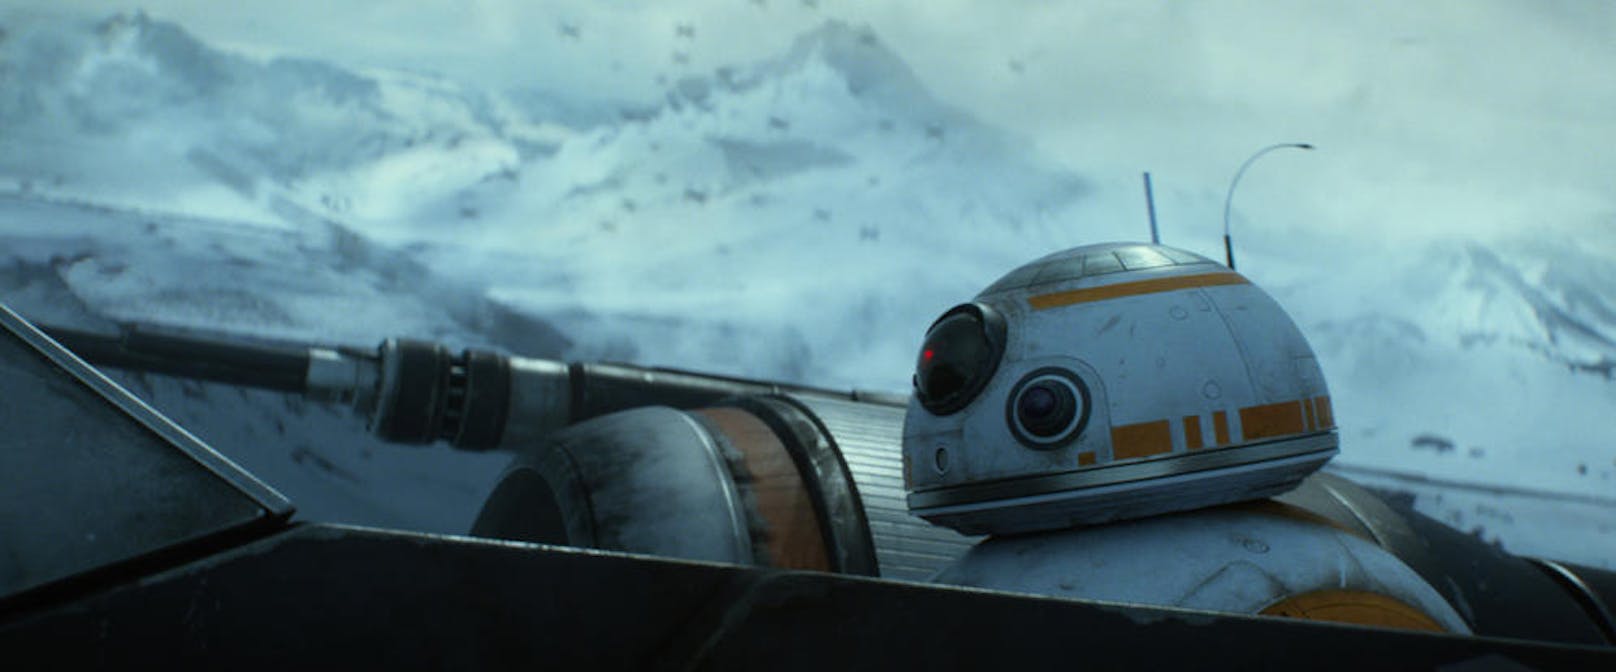 BB-8 im Kampfeinsatz in "Star Wars Episode VII: Das Erwachen der Macht"